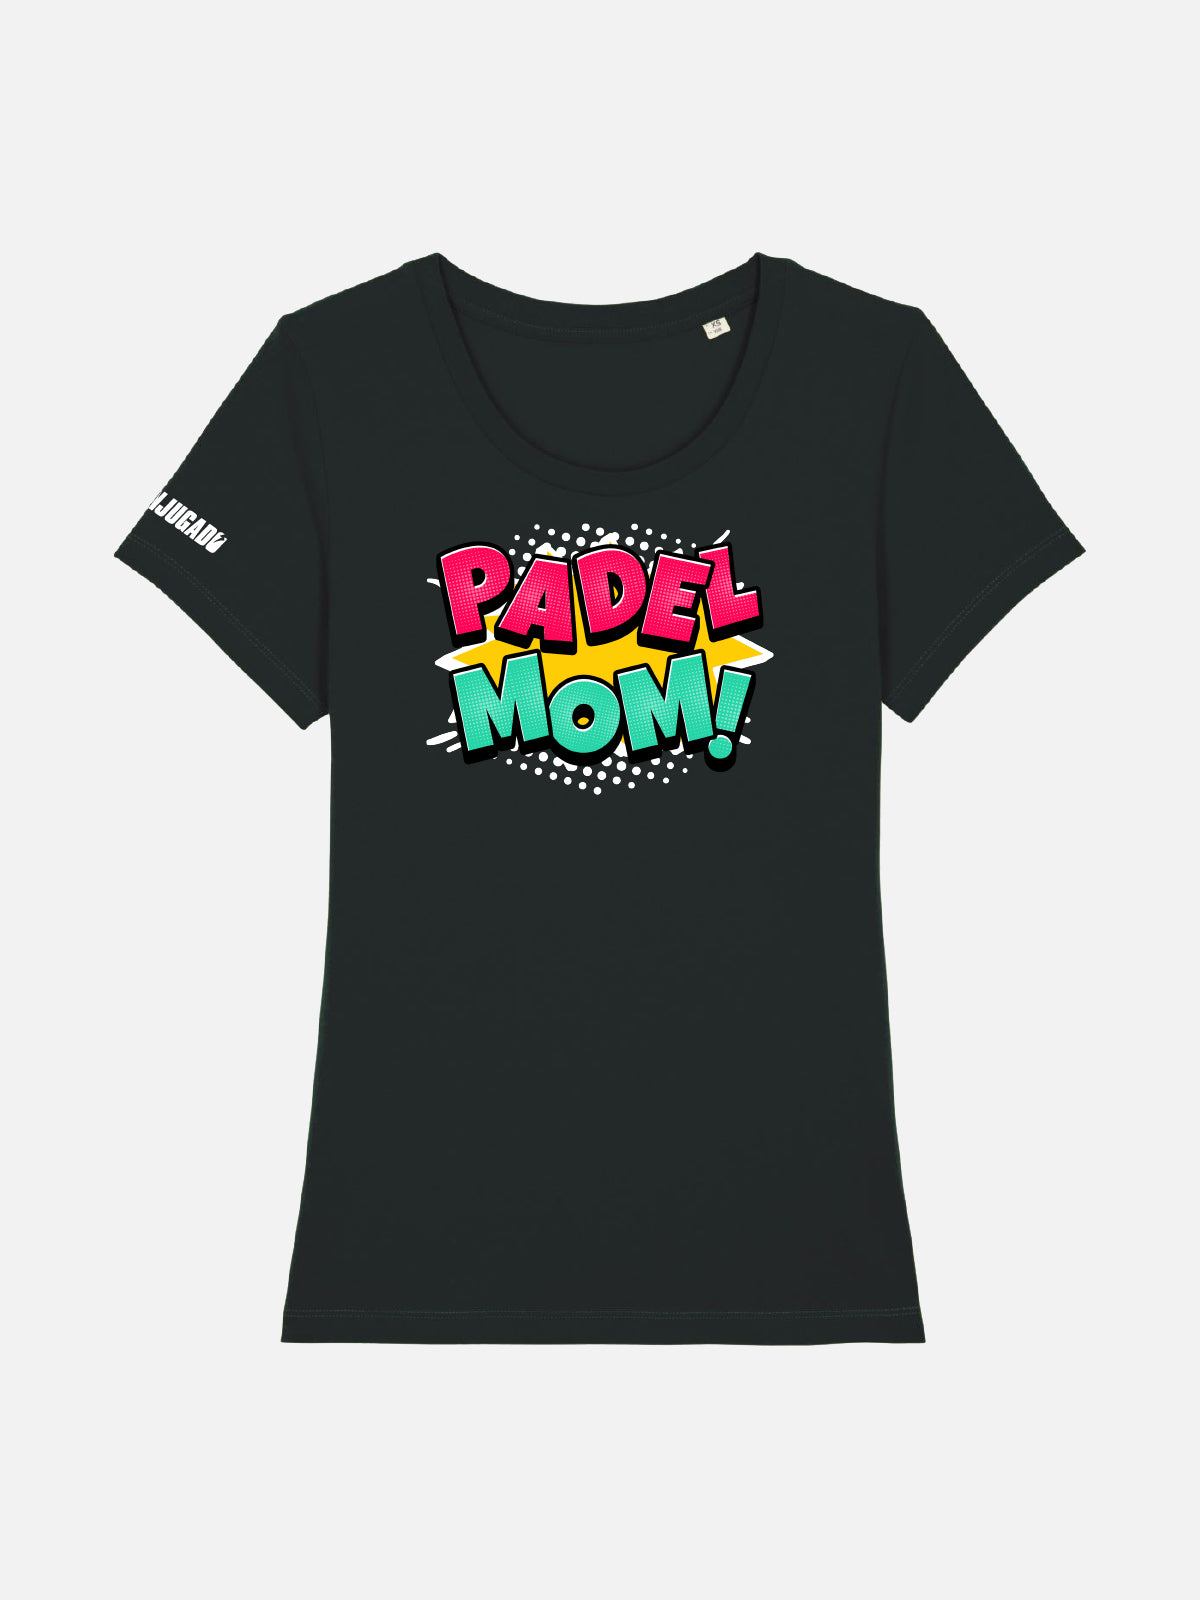 Fun Women's T-Shirt - Padel Mom